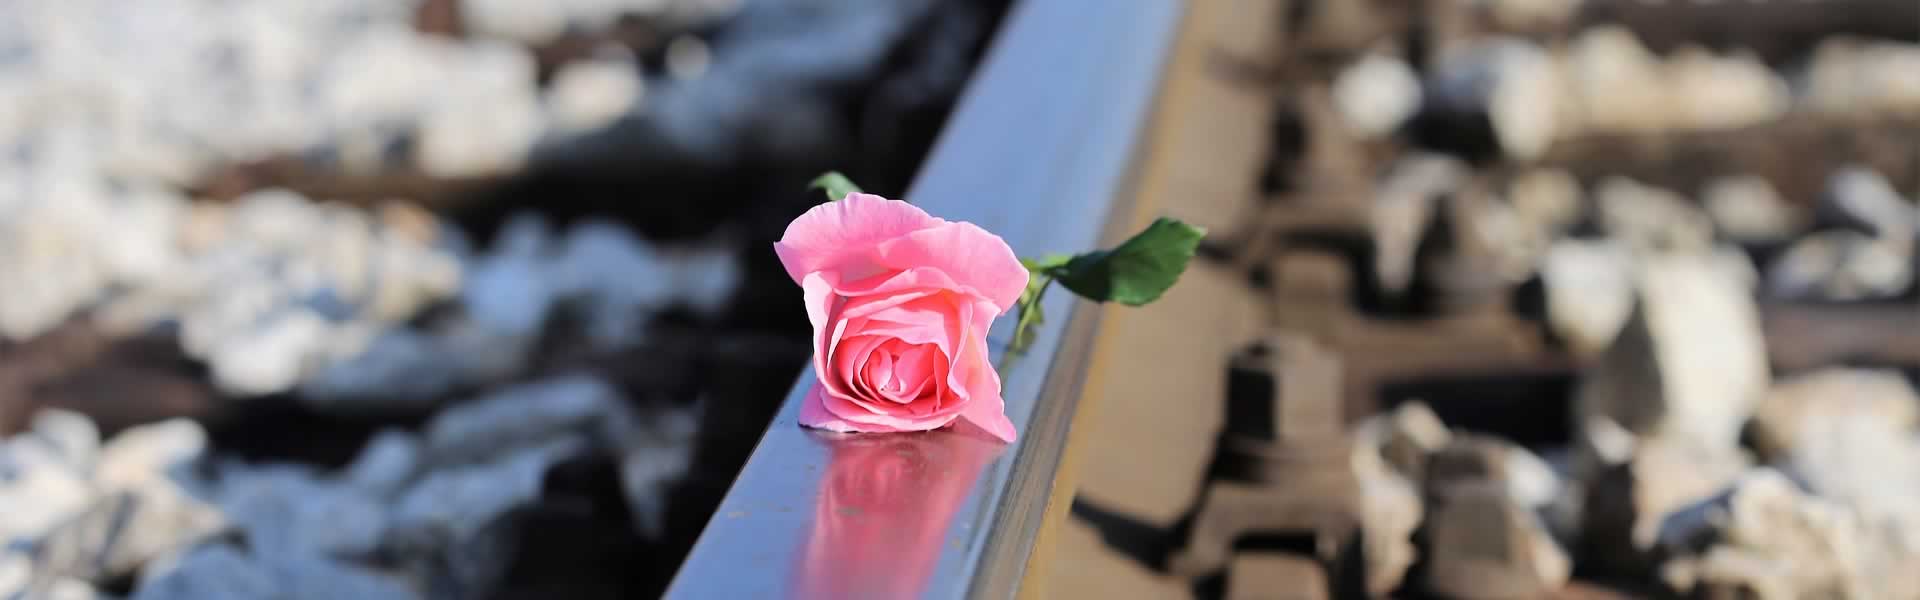 Rosa per decorazione lapide cimitero